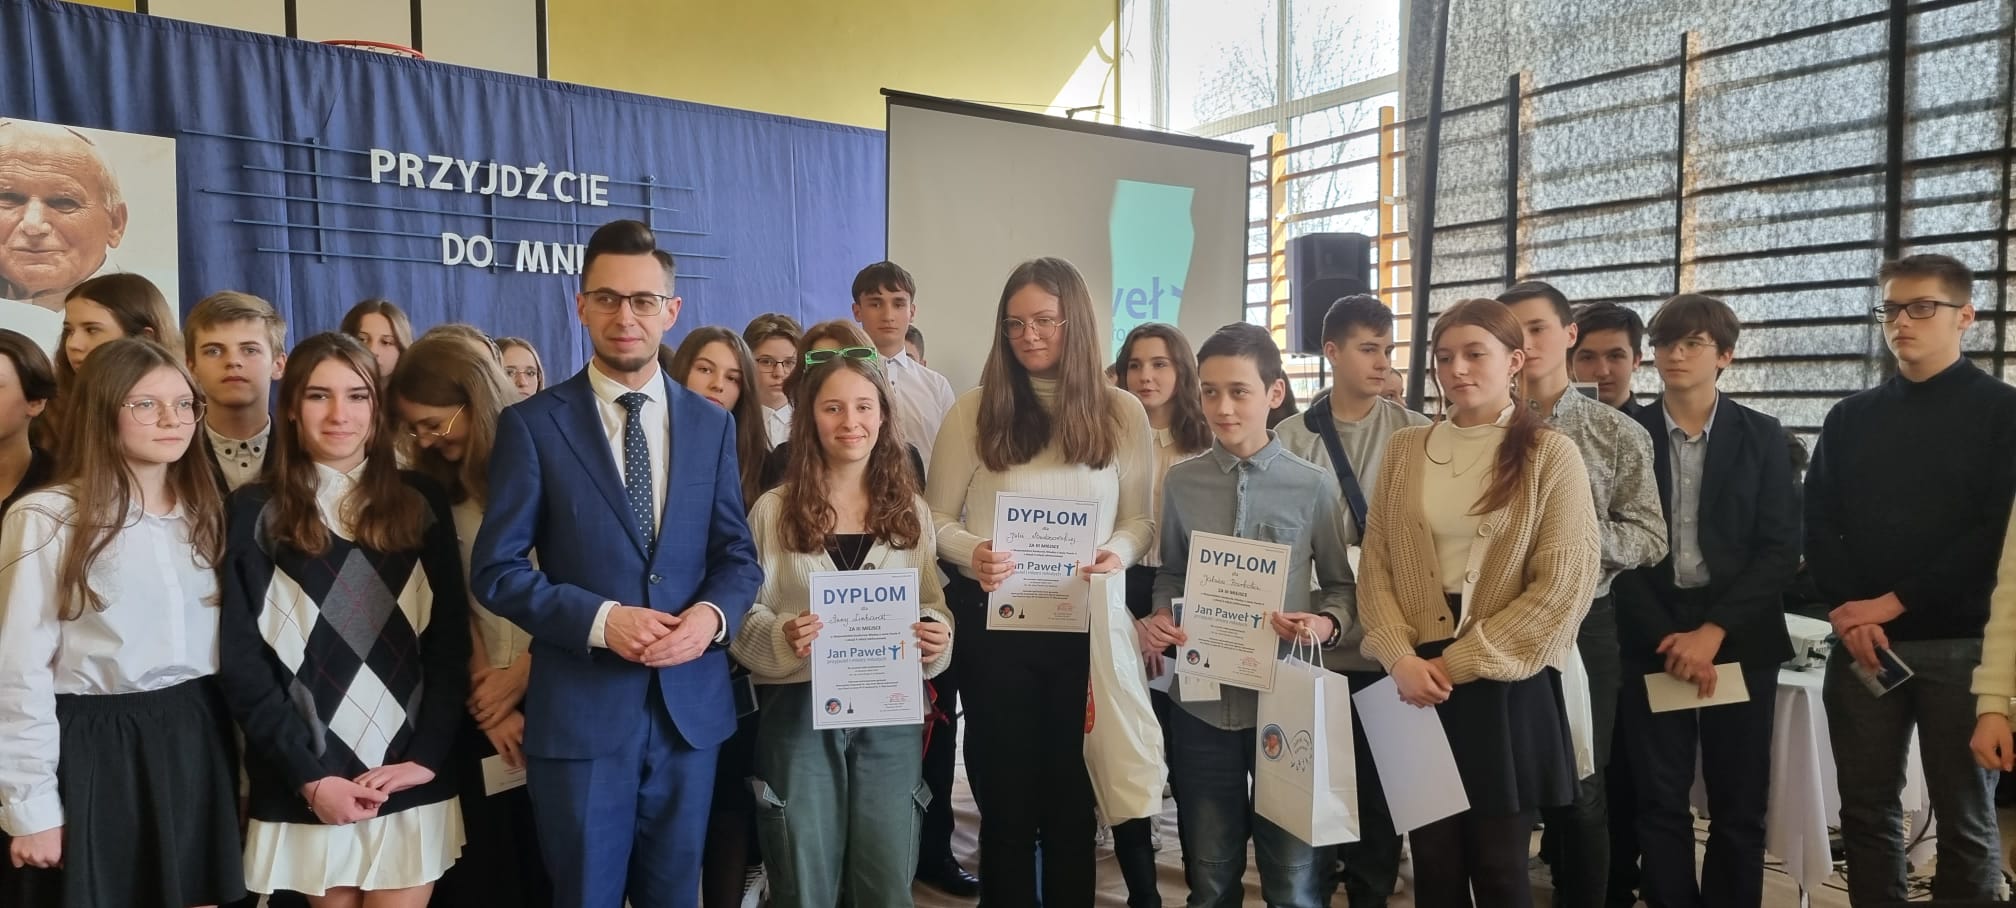 Uczniowie z Posłem Filipem Kaczyński, po wręczeniu nagród